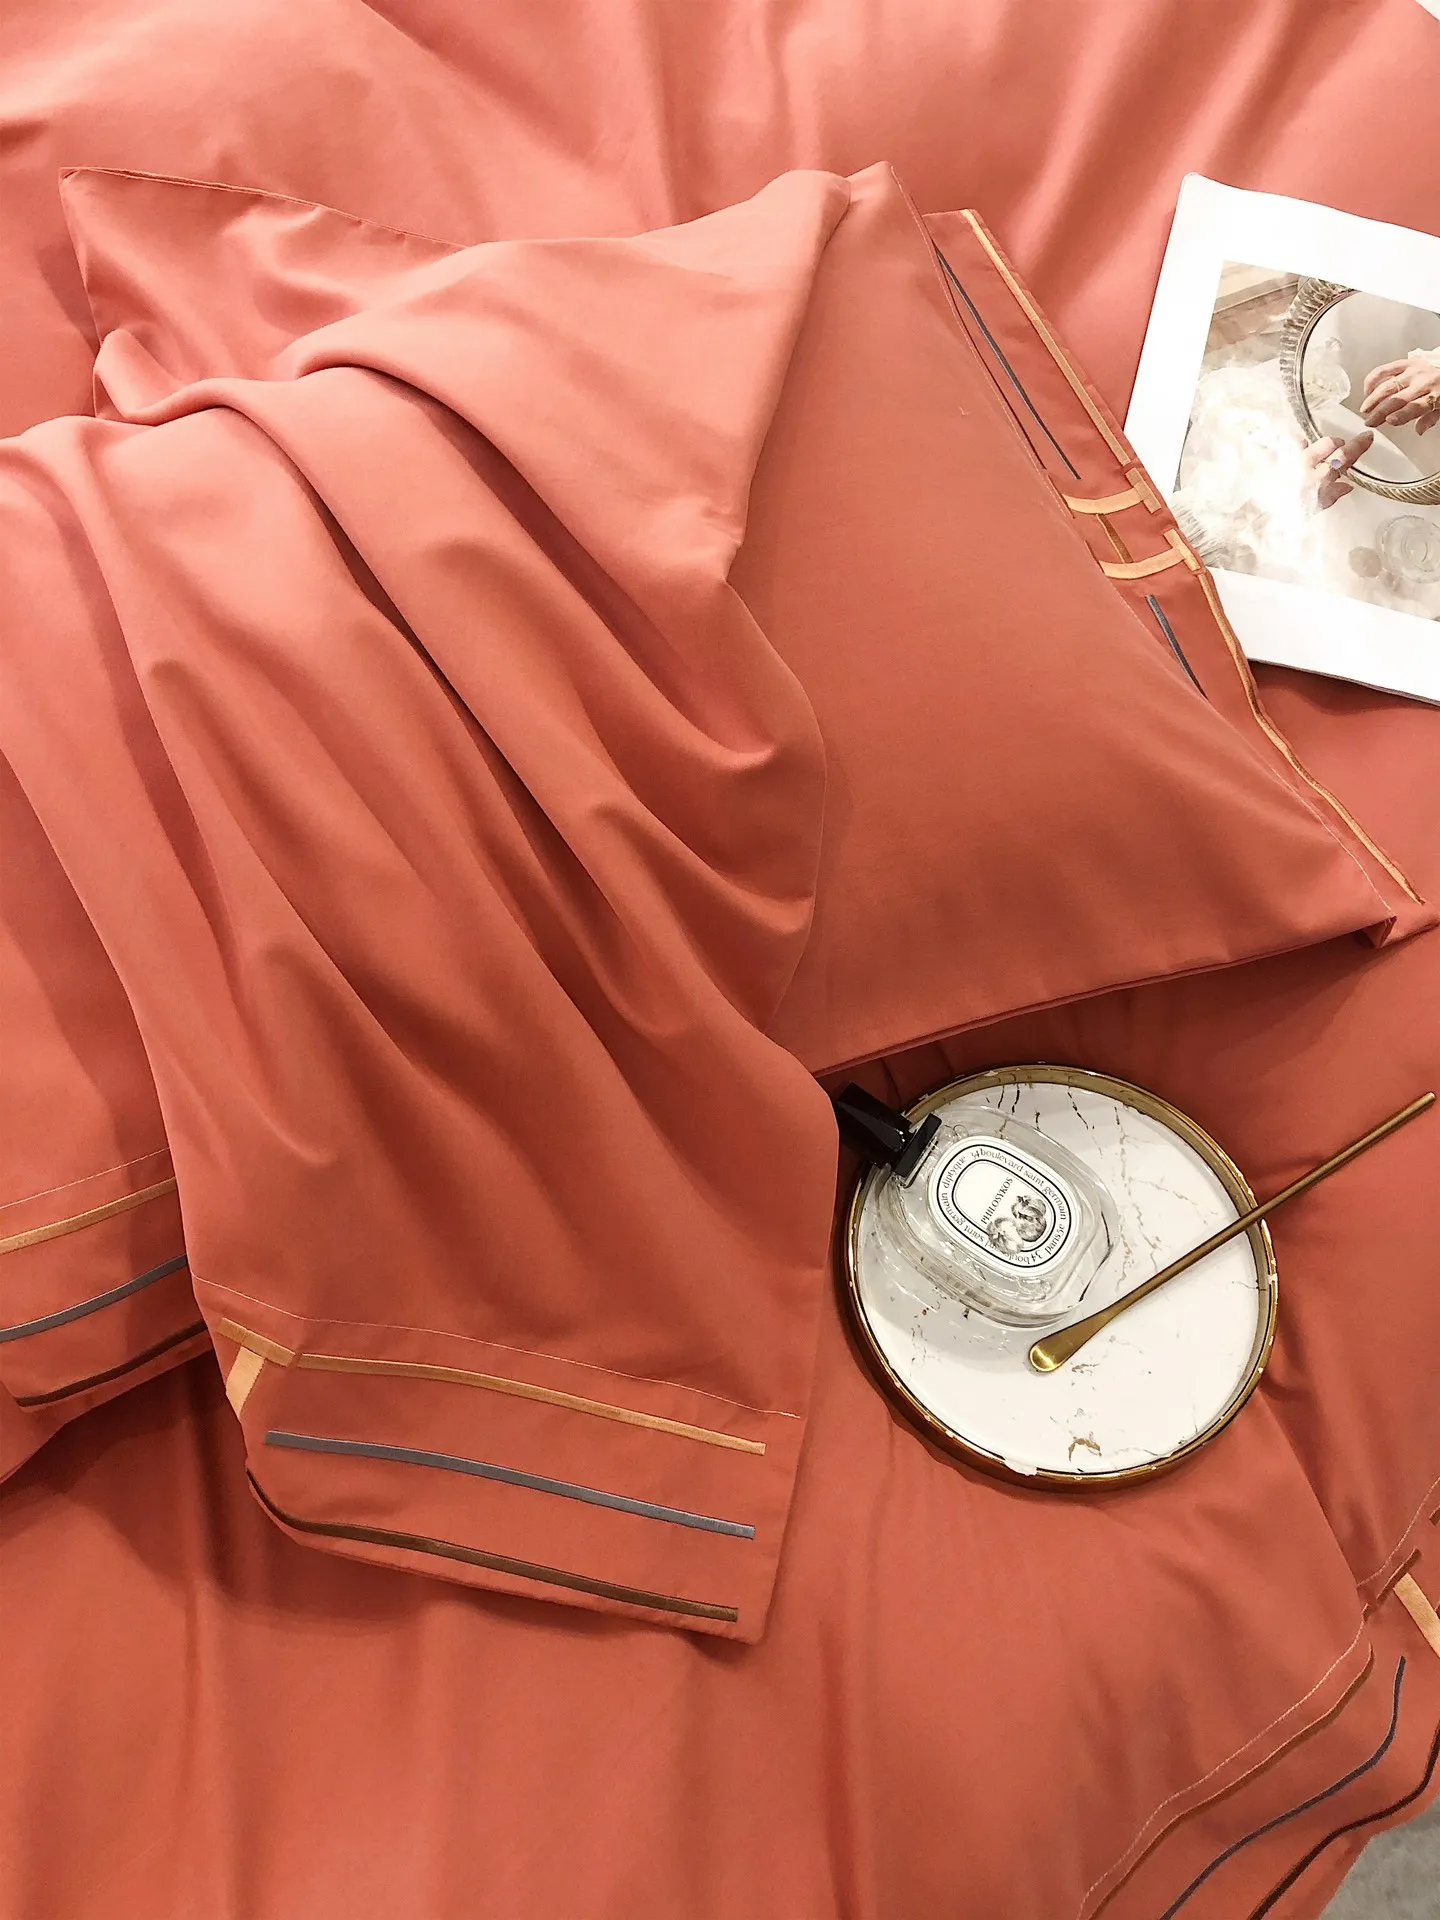 Lüks Tasarım Yatak Takımları Yüksek Kalite Günleri İpek Pamuk Elegance Renkler Yumuşak çarşaf Konfor Yorgan Kapak Işlemeli